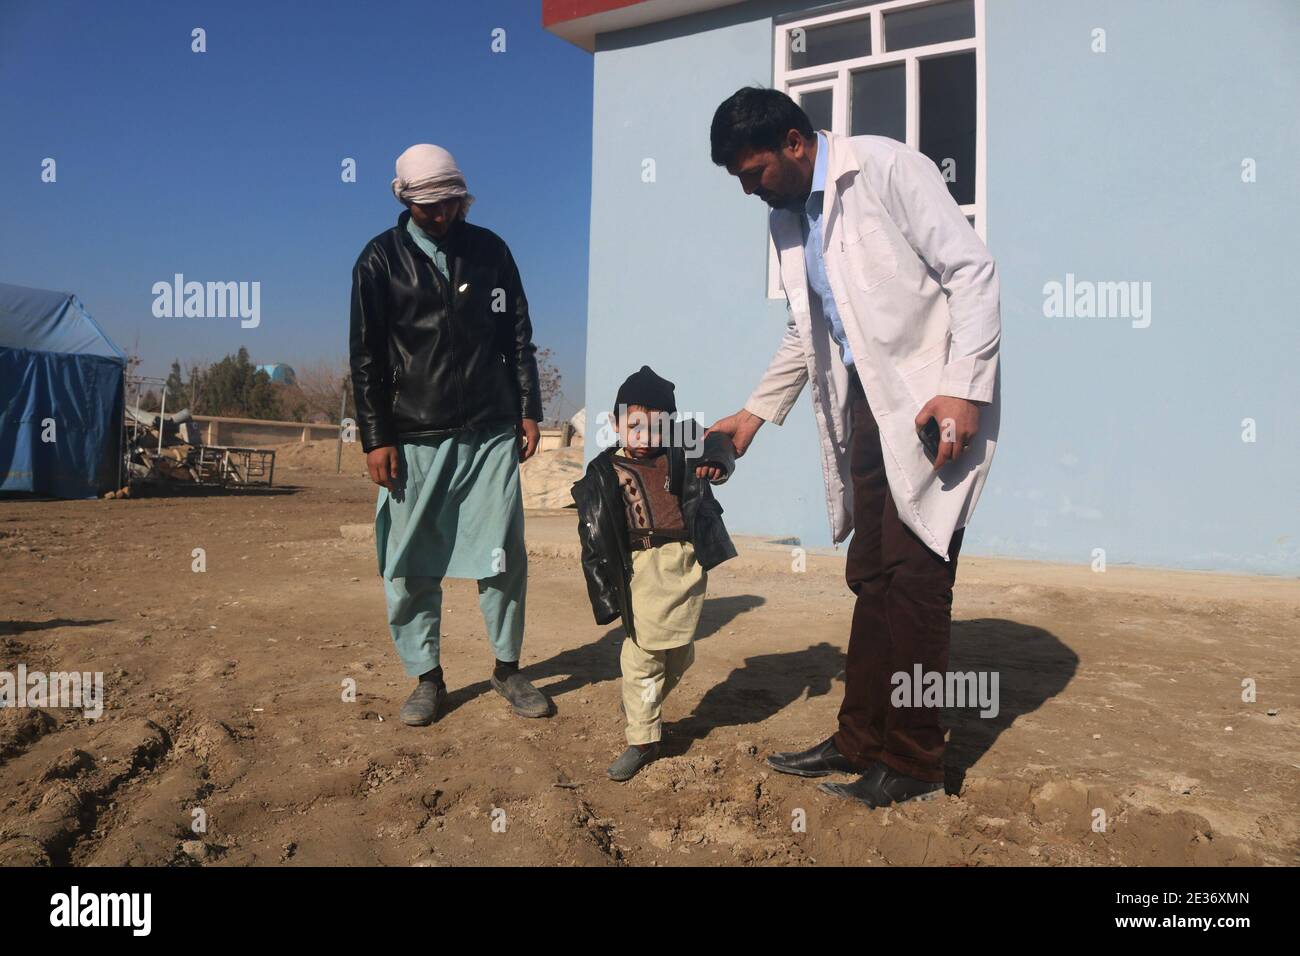 Shiberghan, Afganistán. 17 de enero de 2021. Un trabajador de la salud ayuda a un niño afgano que ha sido infectado por la polio en el distrito de Aqcha en la provincia de Jawzjan, Afganistán, 17 de enero de 2021. El Ministerio de Salud Pública de Afganistán lanzó el domingo una campaña nacional para administrar la dosis de vacunación contra la poliomielitis a 9.9 millones de niños menores de cinco años, informó el Ministerio en un comunicado. Crédito: Mohammad Jan Aria/Xinhua/Alamy Live News Foto de stock